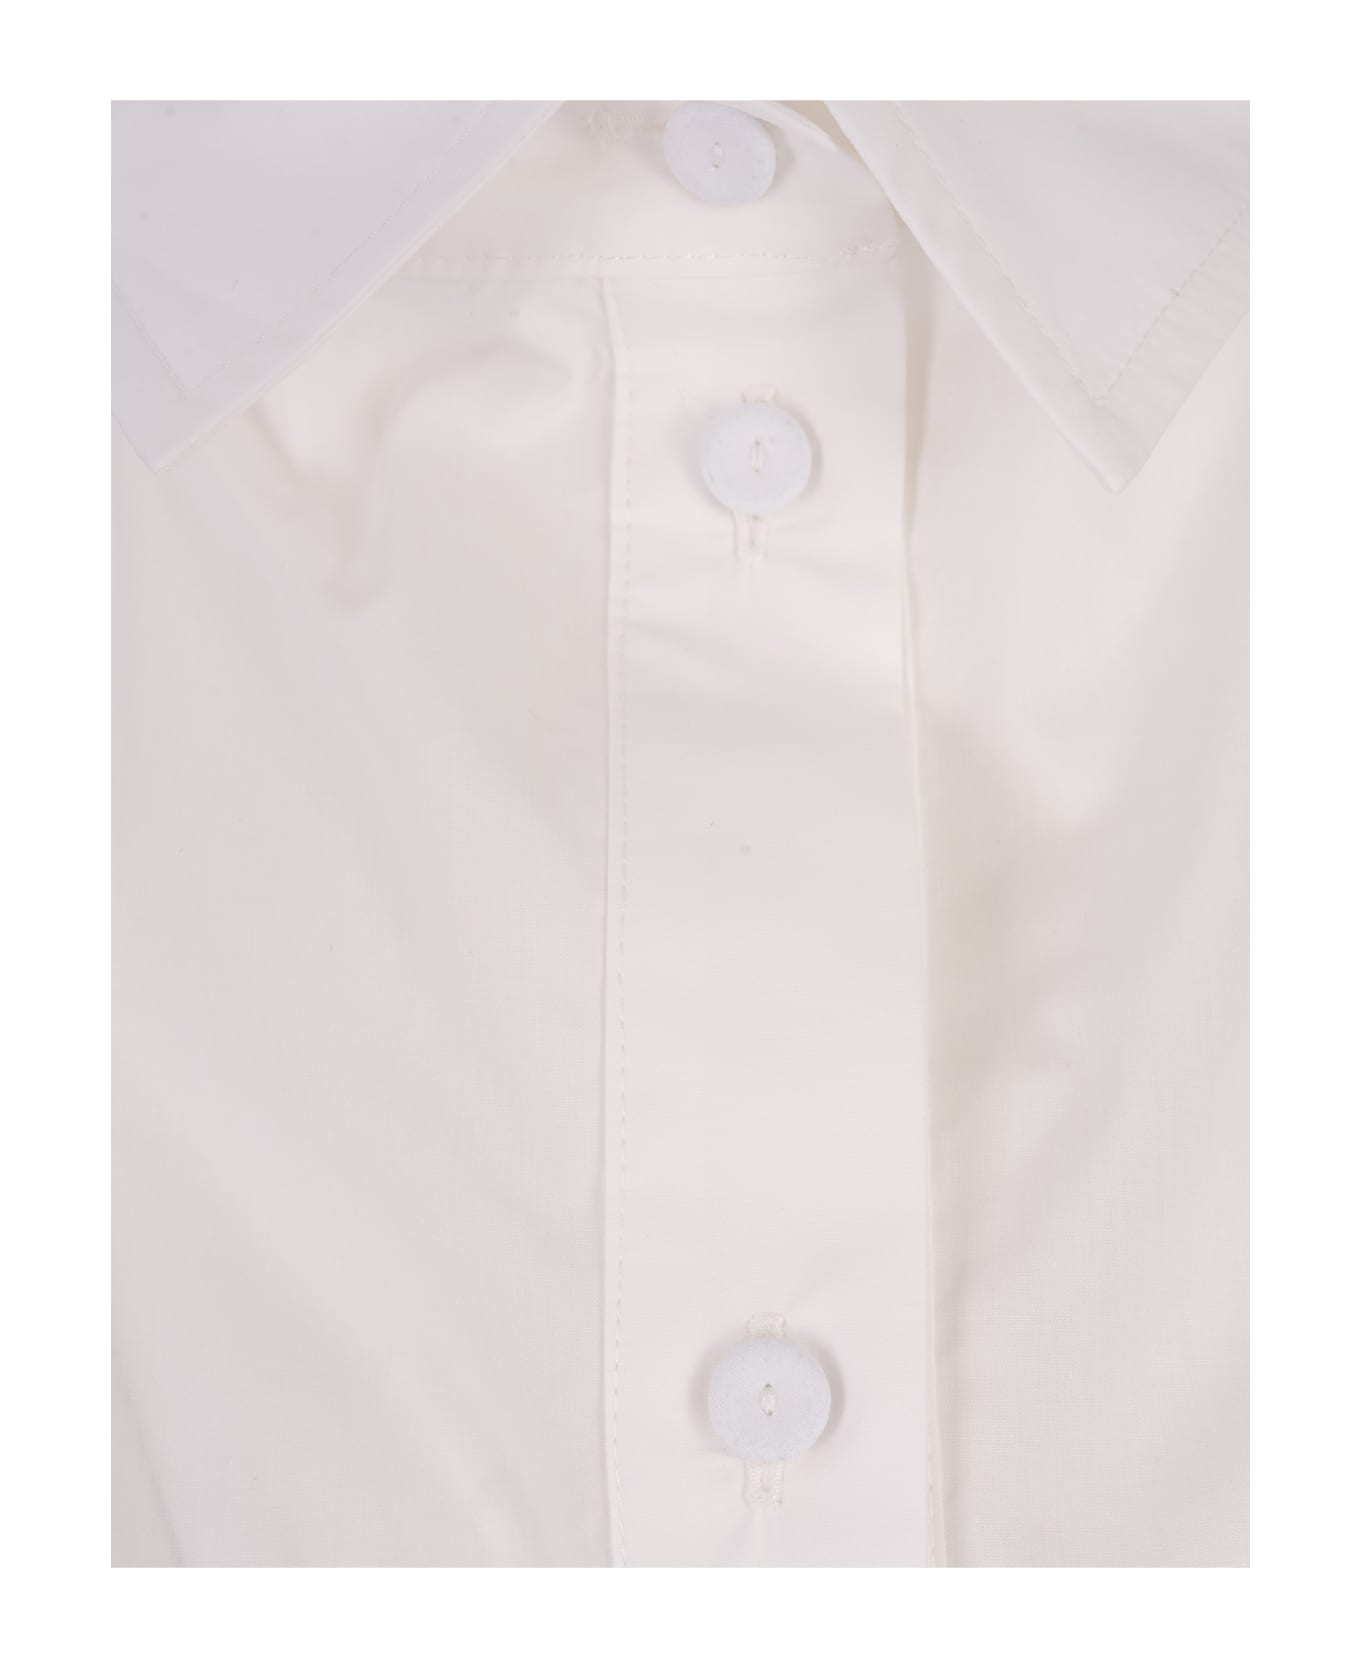 Alessandro Enriquez White Cotton Shirt With Knot - White